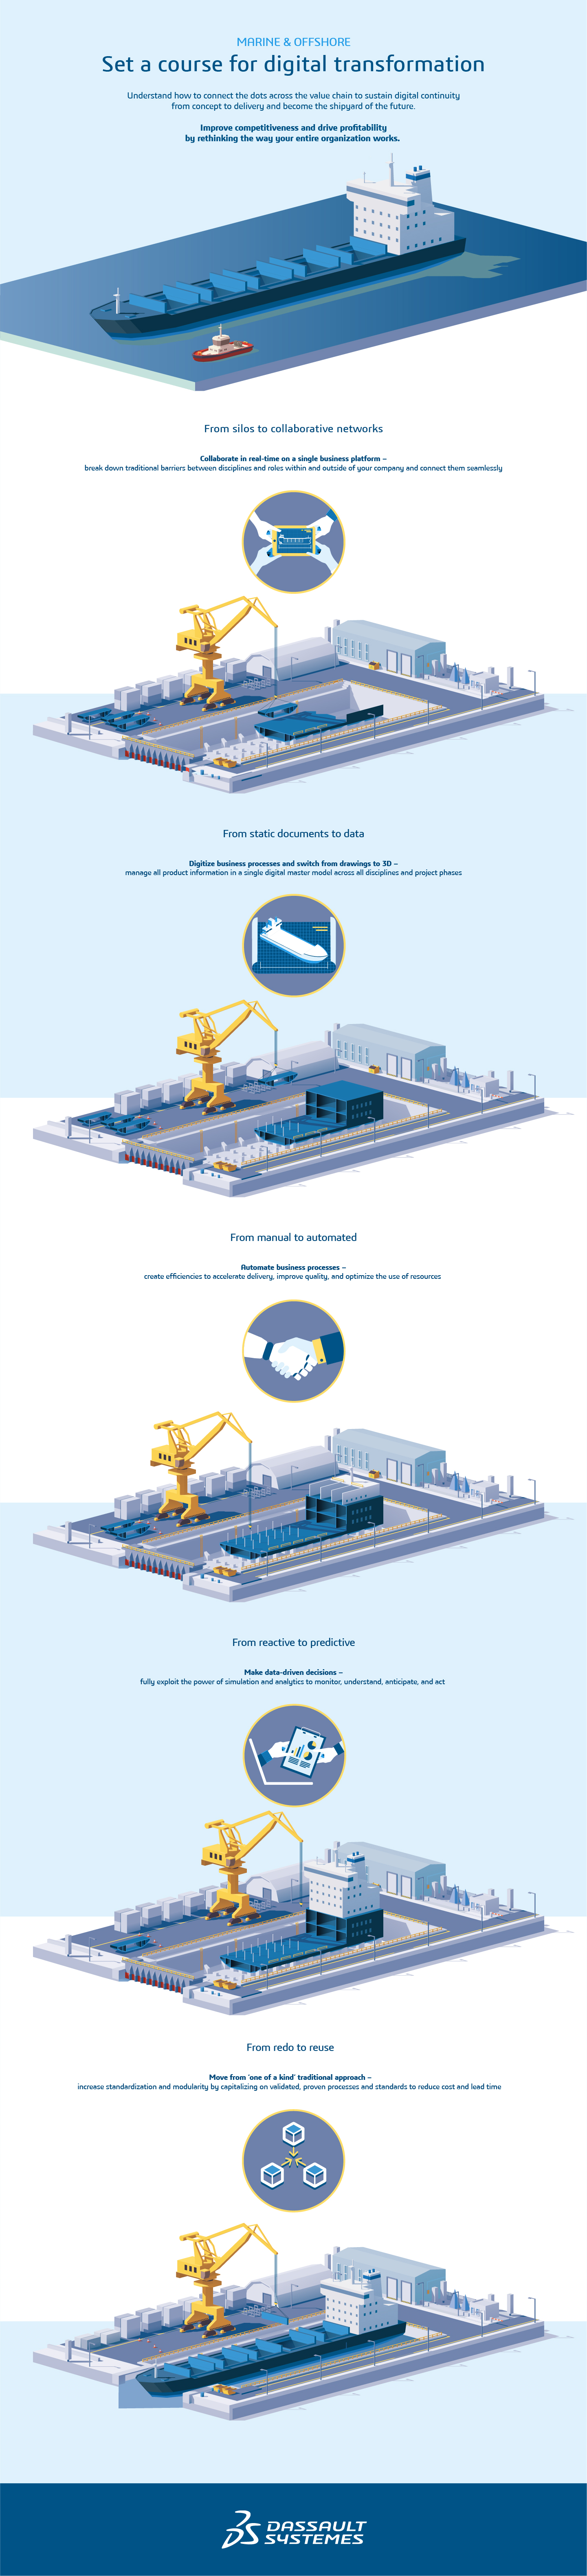 Digital Shipyard > Digital transformation > Dassault Systèmes®